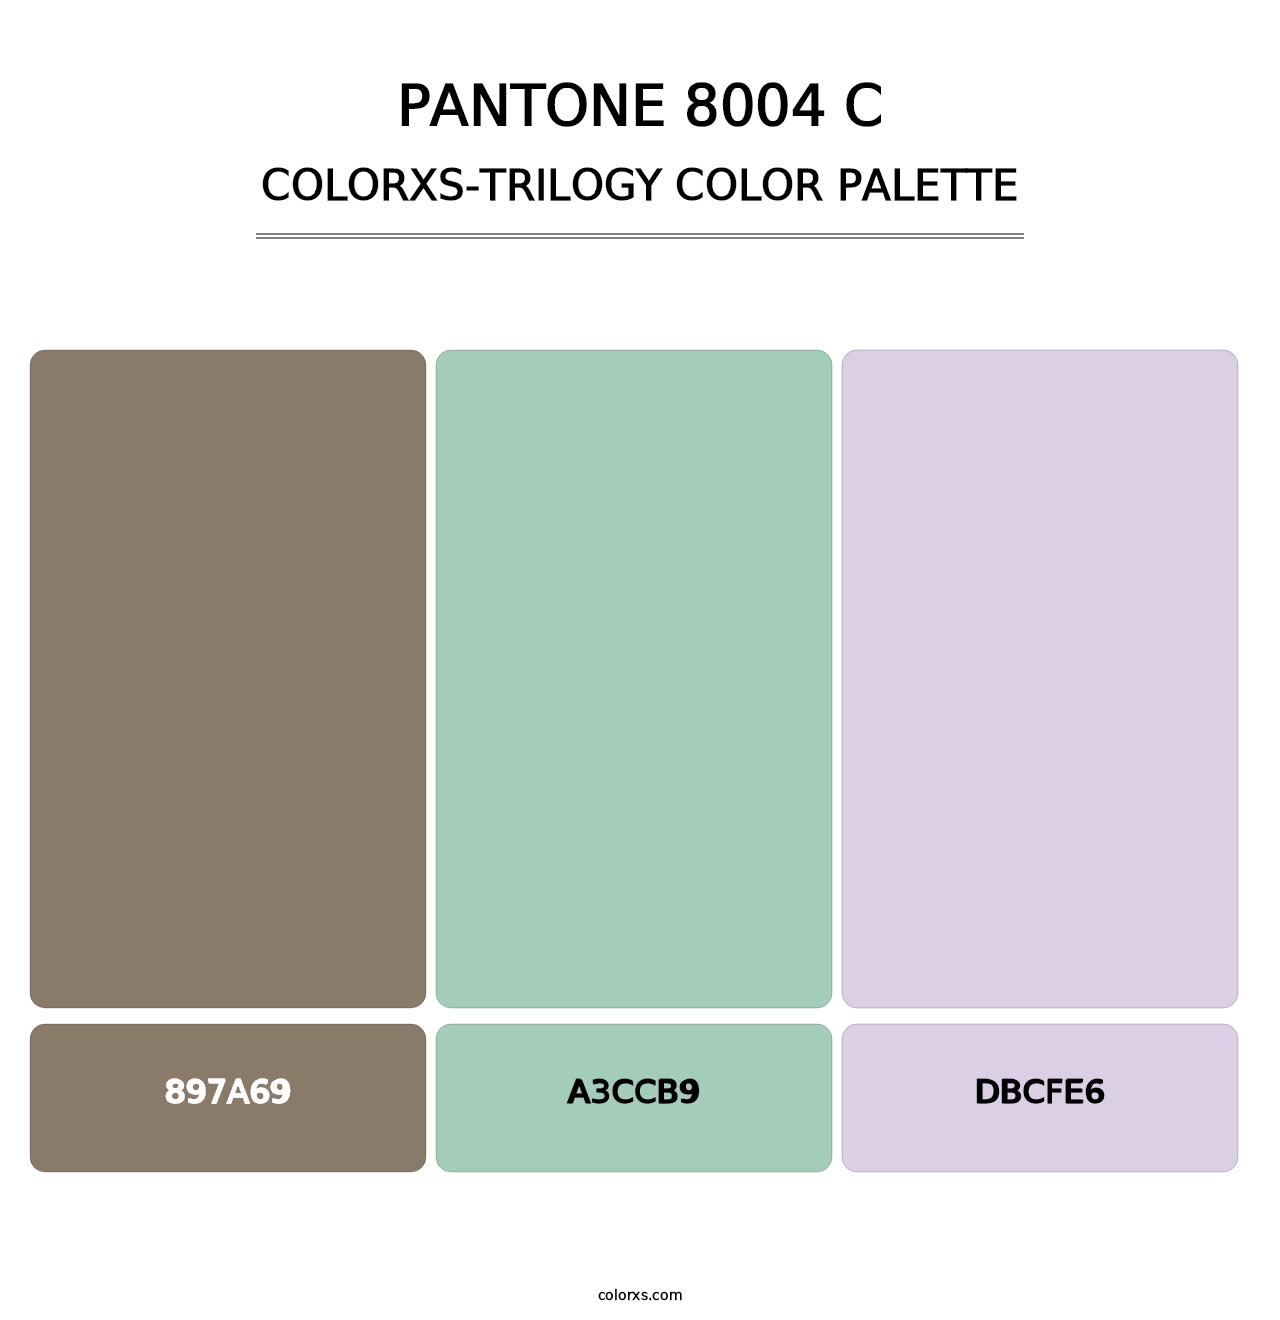 PANTONE 8004 C - Colorxs Trilogy Palette